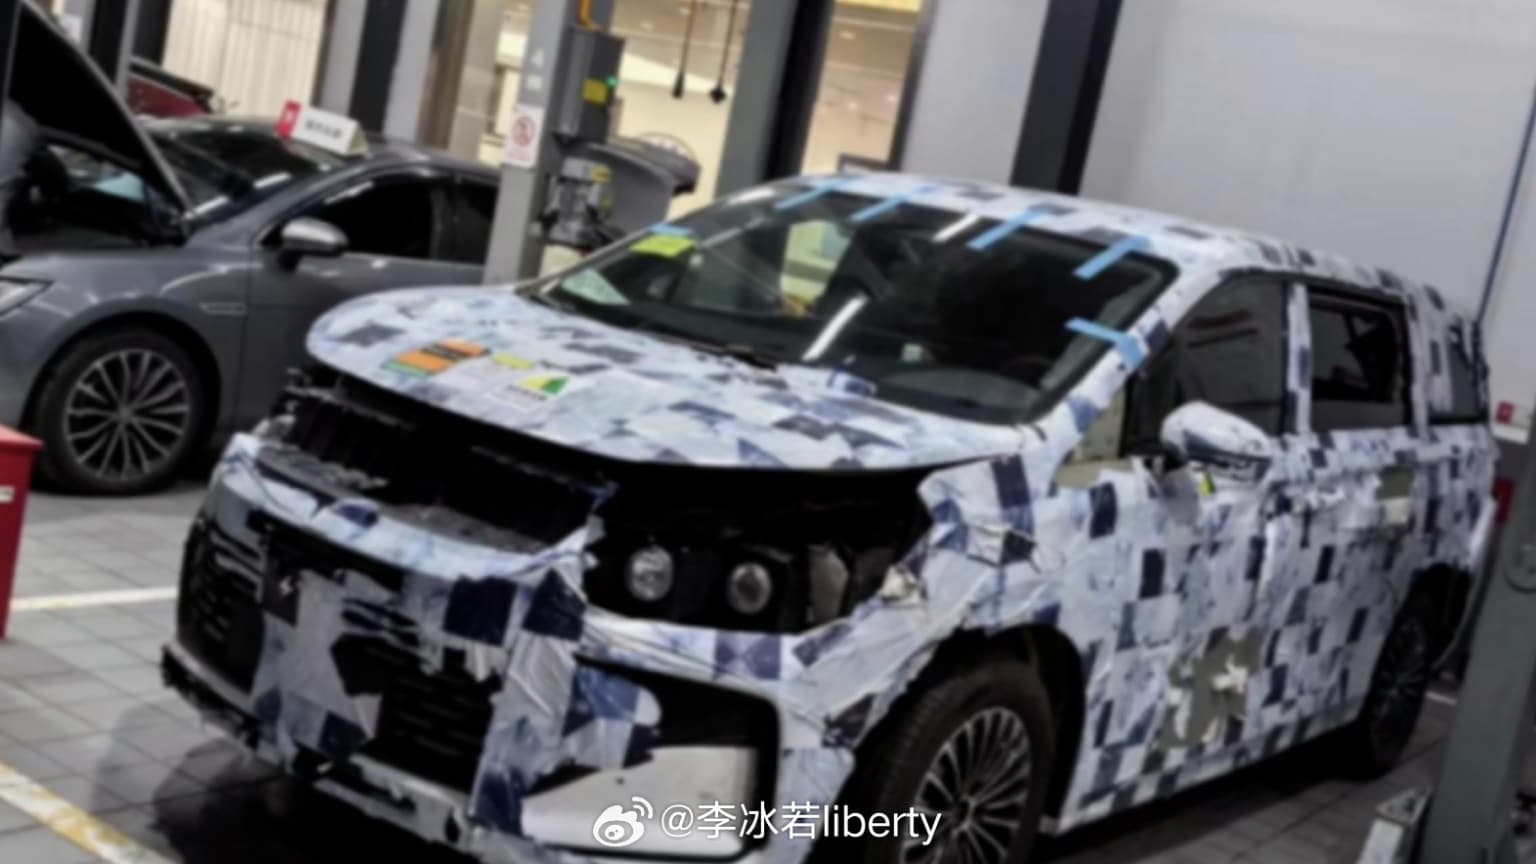 Ранее в Китае во время дорожных тестов был замечен новый минивэн от компании BYD. Однако компания не раскрыла официального названия своего автомобиля.